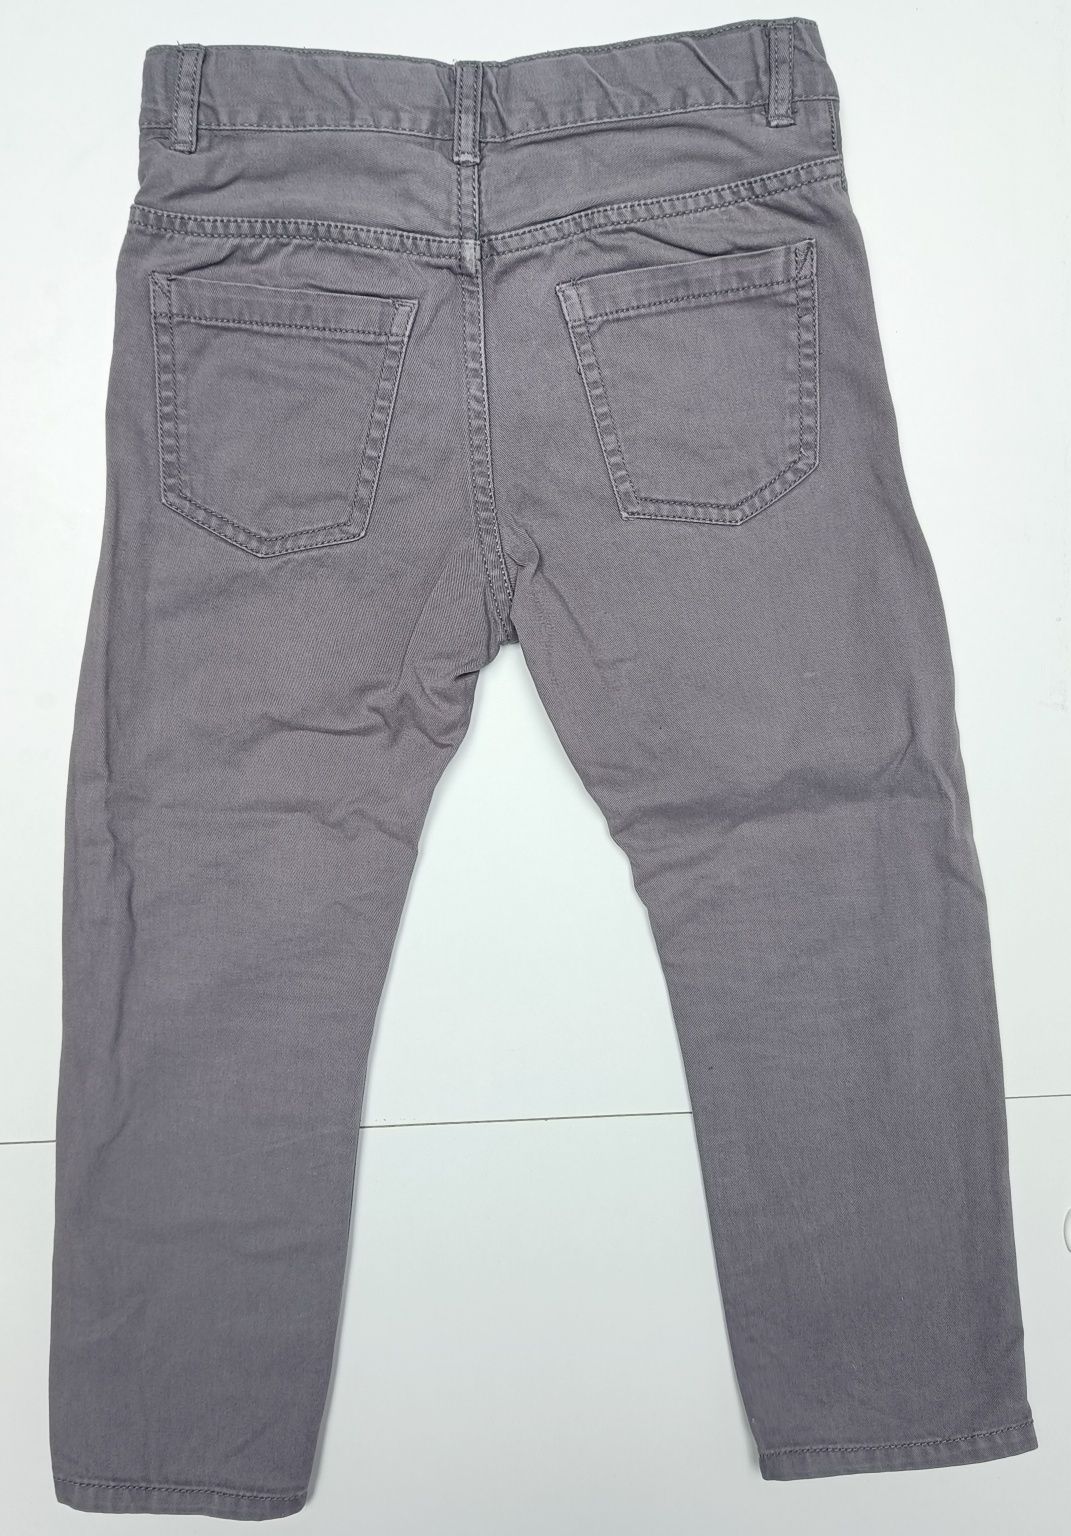 Szare spodnie chłopięce Slim Fit, chinosy, H&M, rozmiar 110